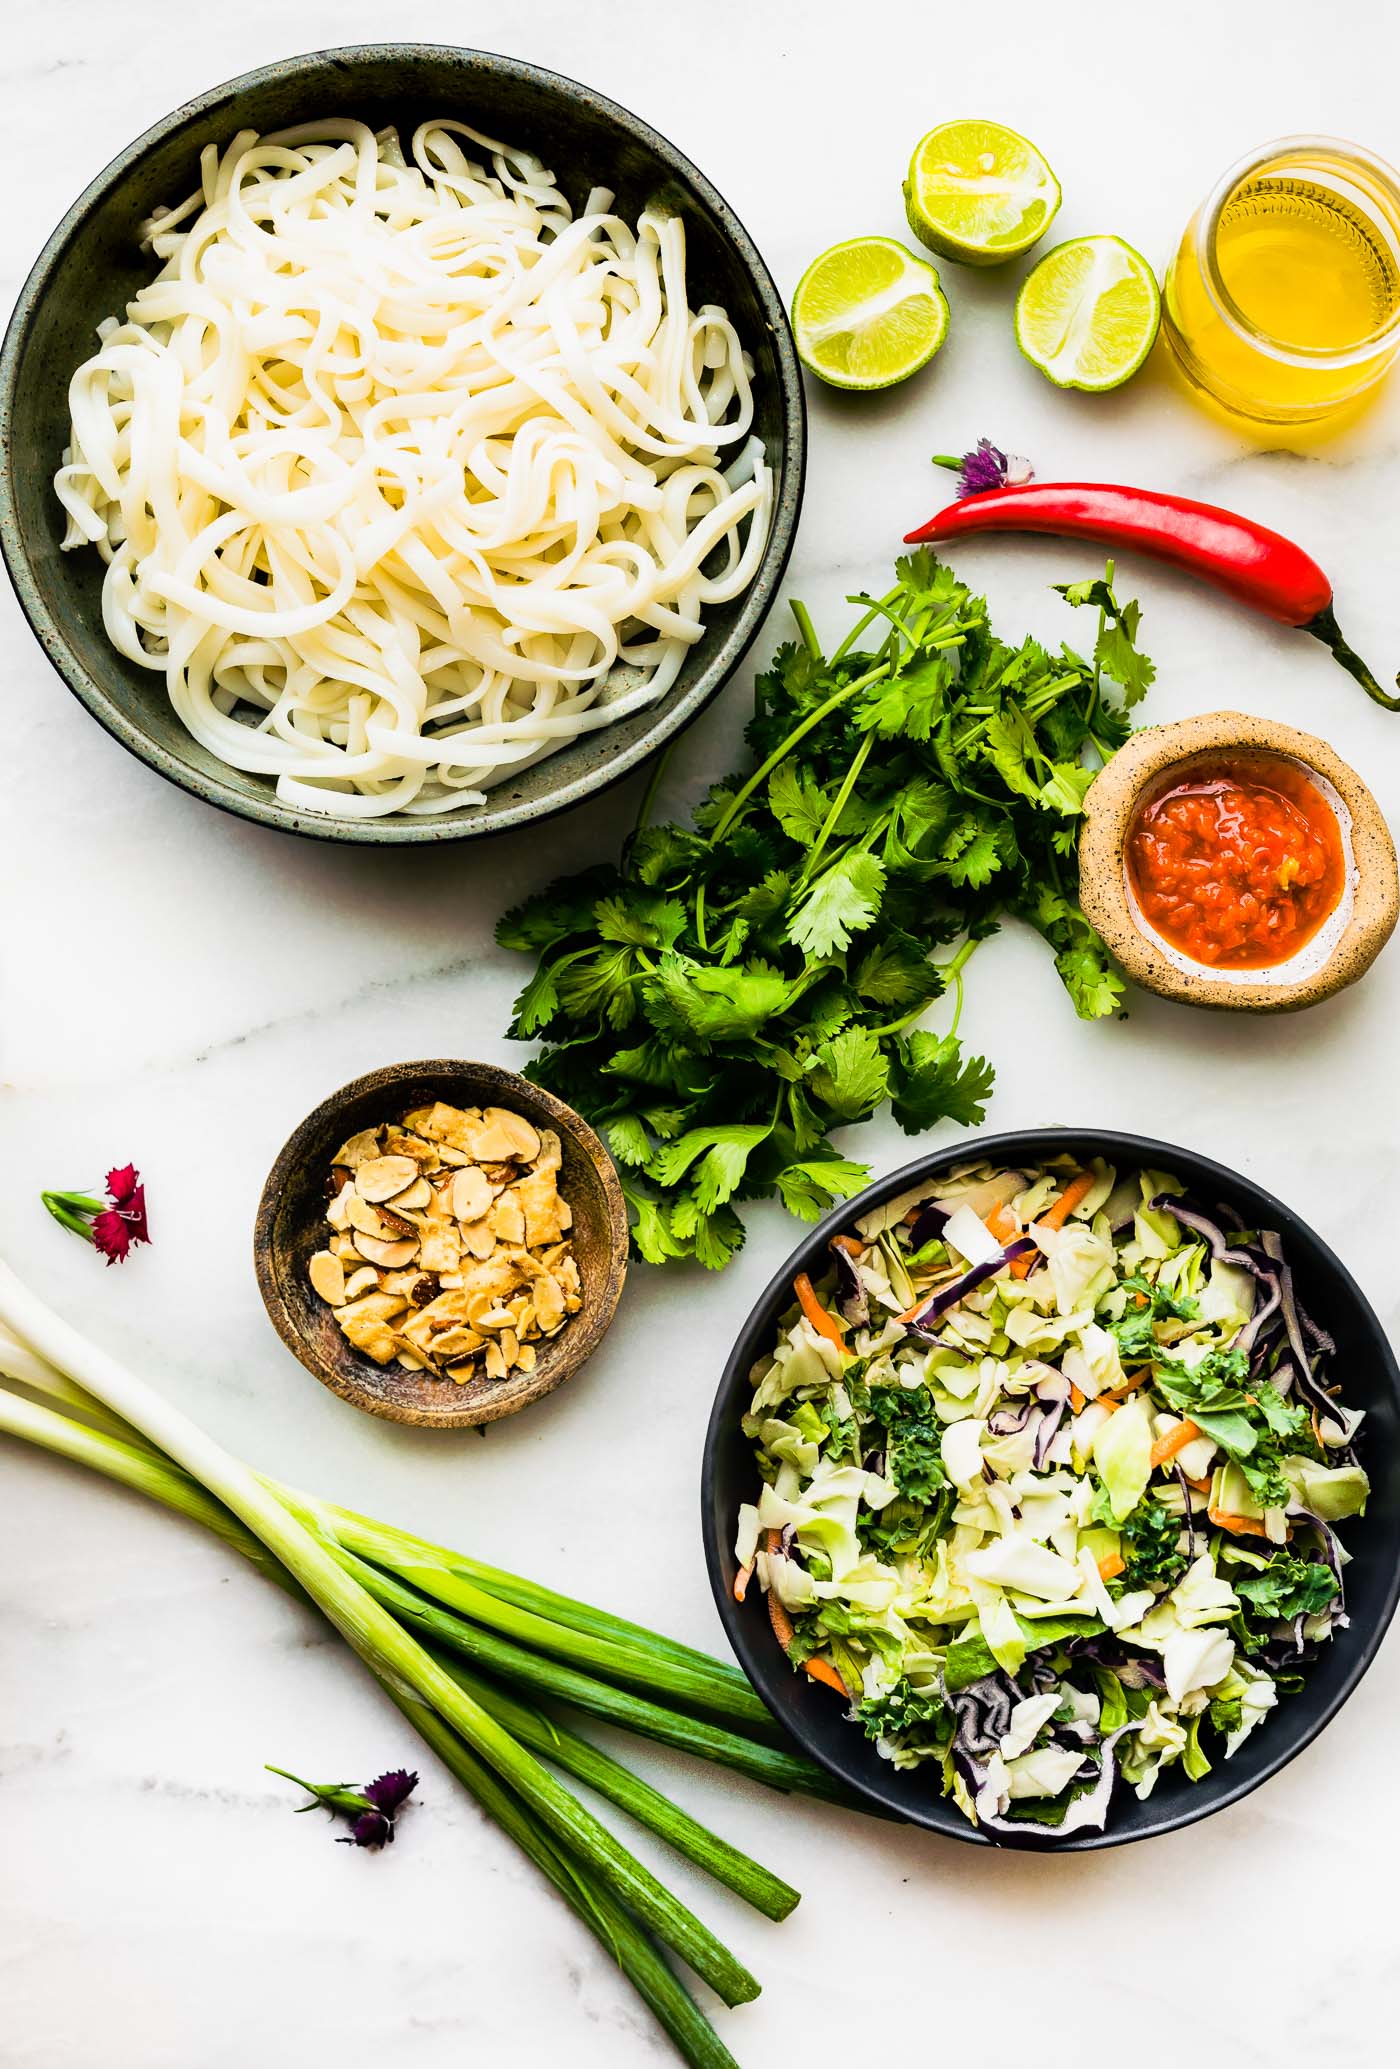 ingredients for rice noodle salad arranged together.